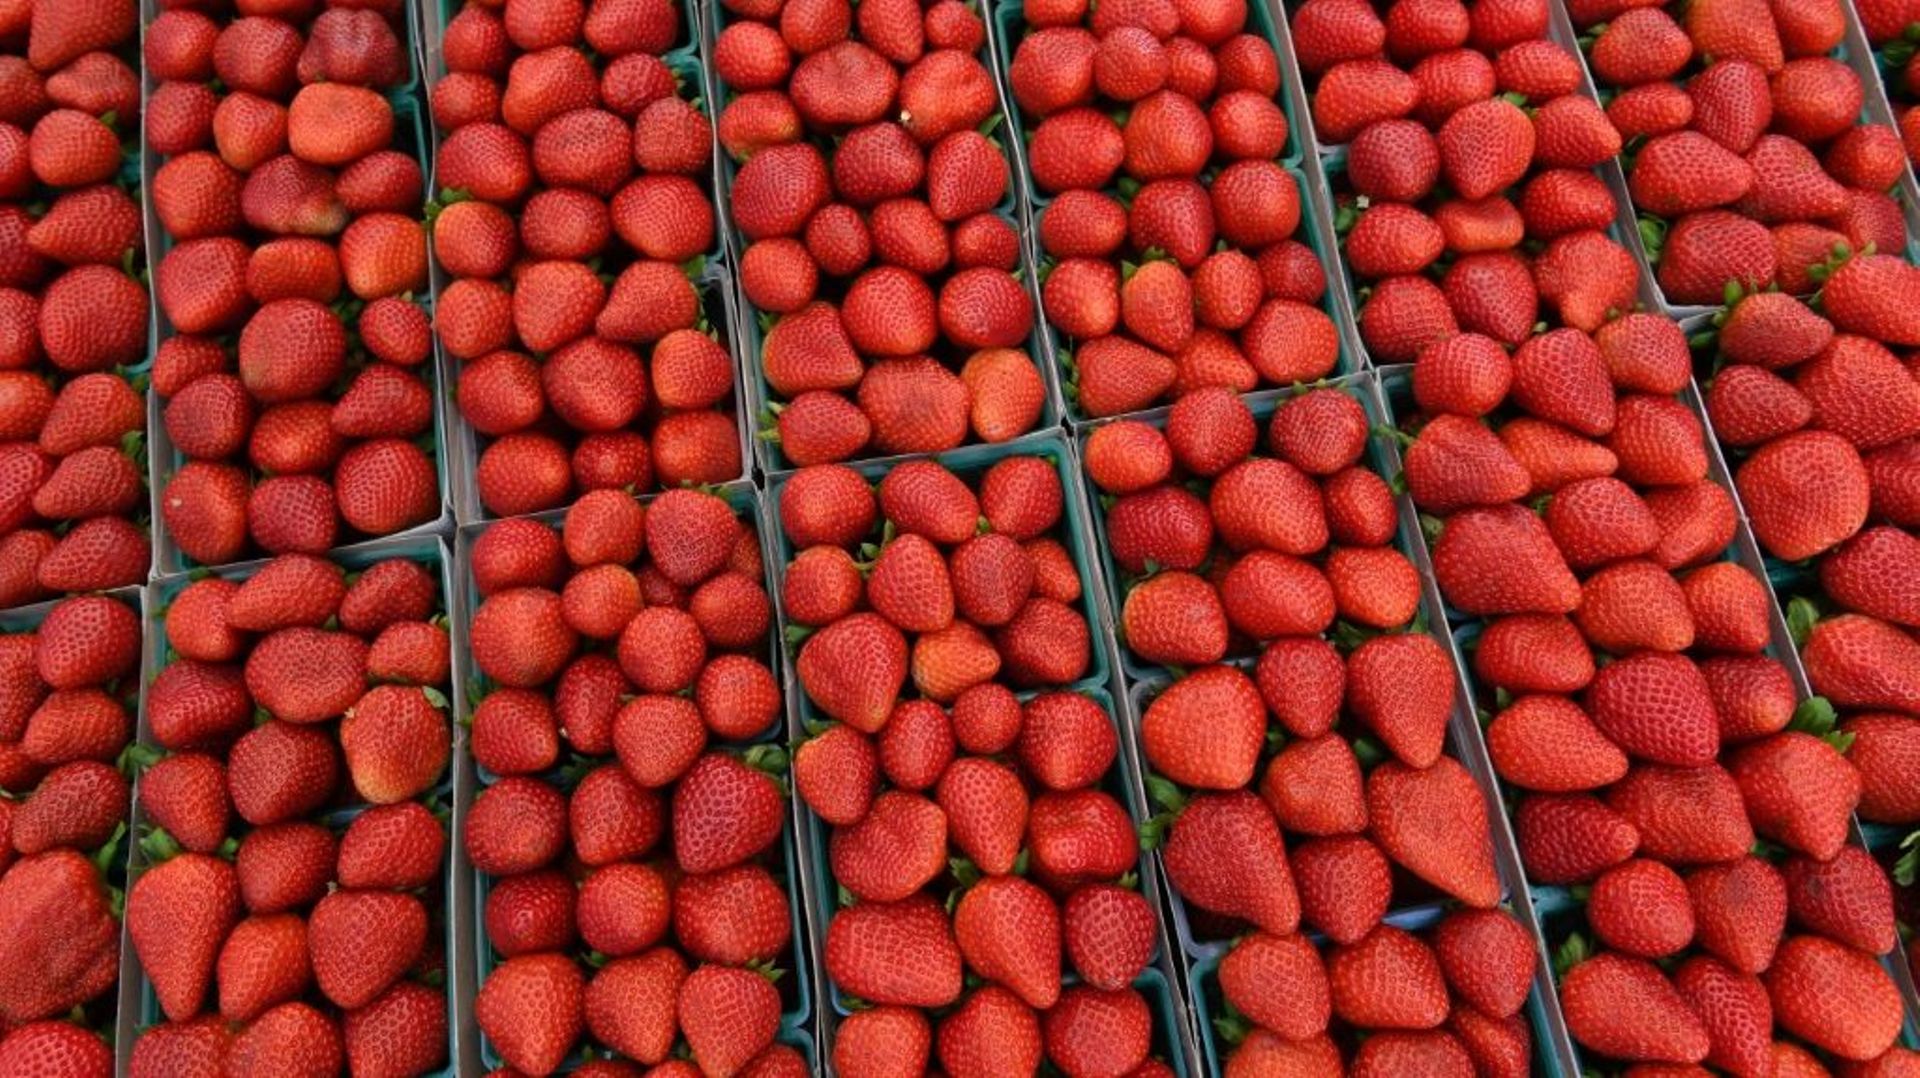 Des aiguilles à coudre cachées dans les fraises, les pommes et les bananes des supermarchés australiens